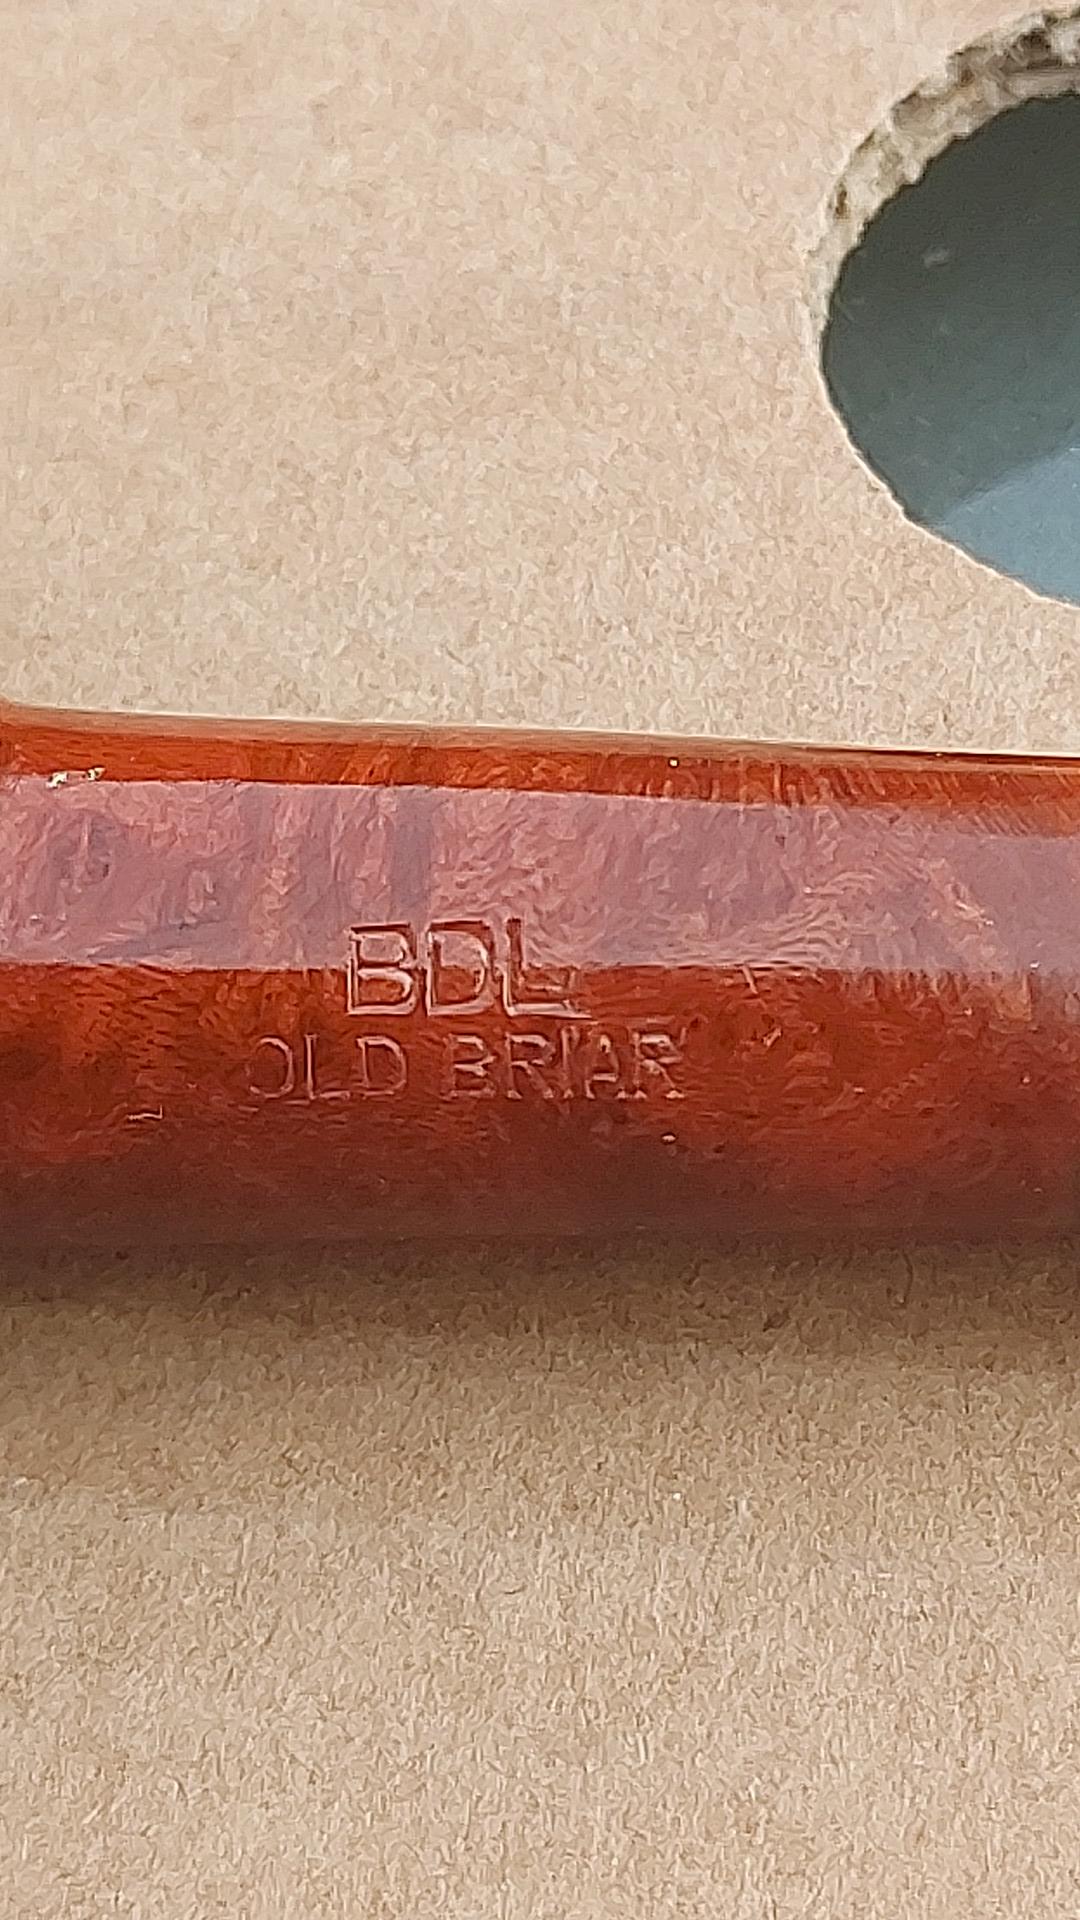 BDL old briar tabakspijp